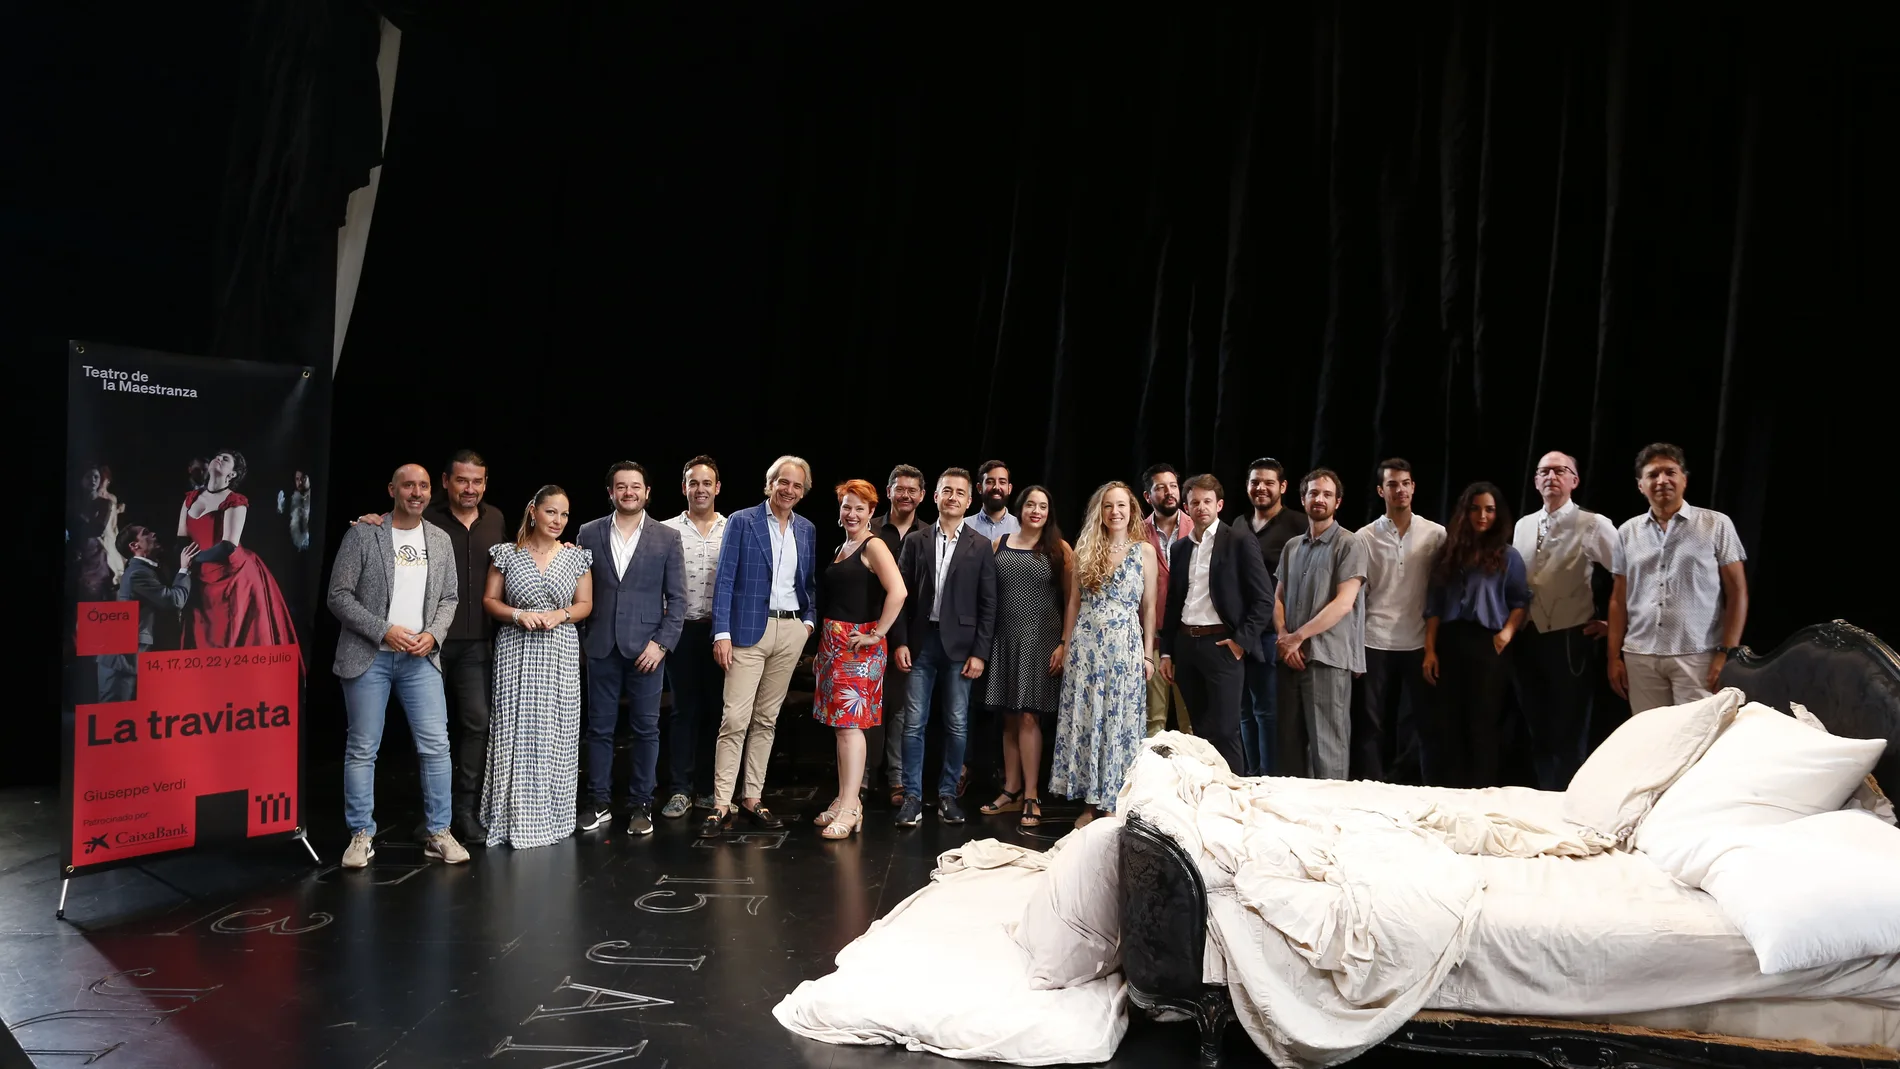 El reparto y los responsables técnicos de La Traviata, este jueves en el escenario del Teatro de la Maestranza